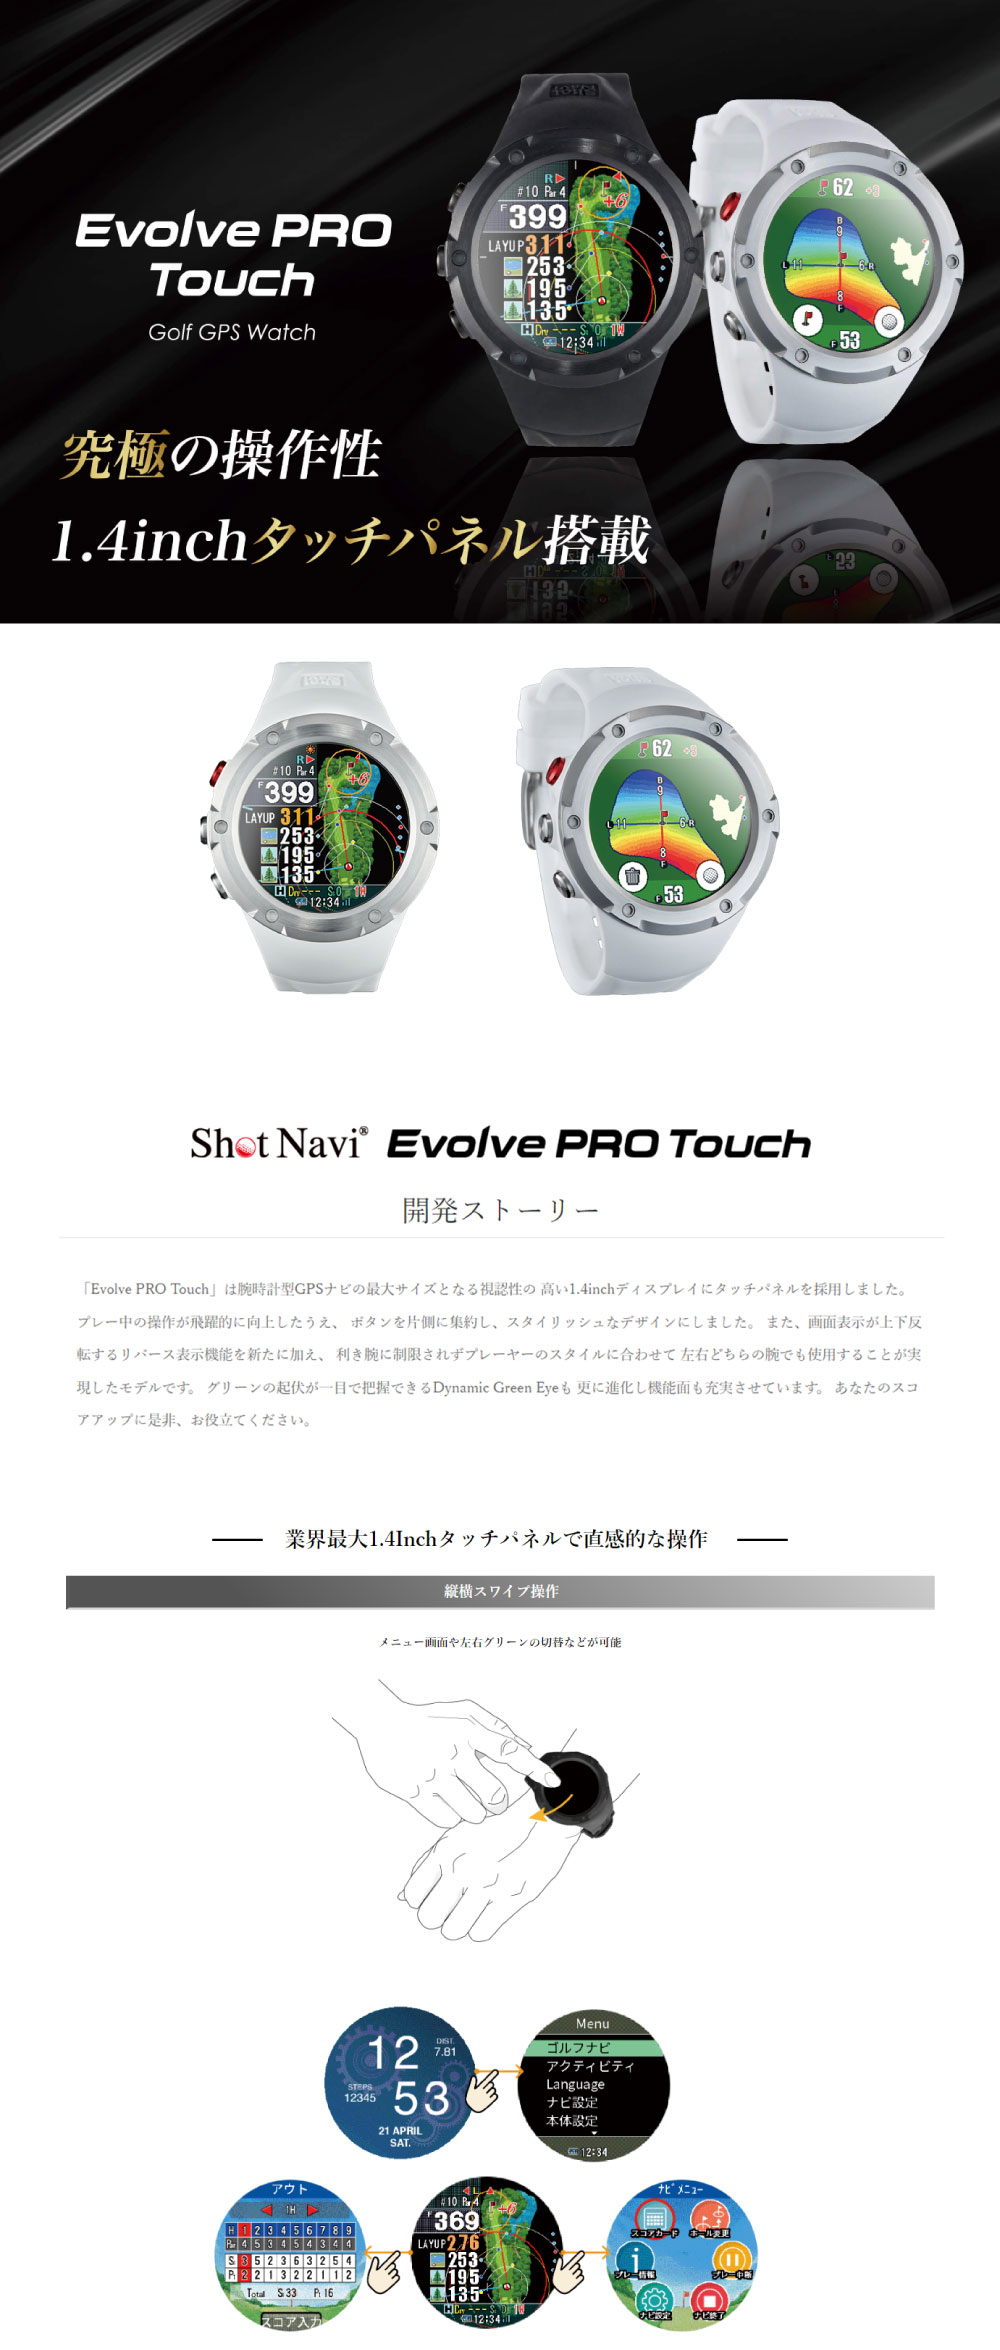 Shot Navi Evolve PRO Touch エボルブ プロ タッチ ショットナビ 日本